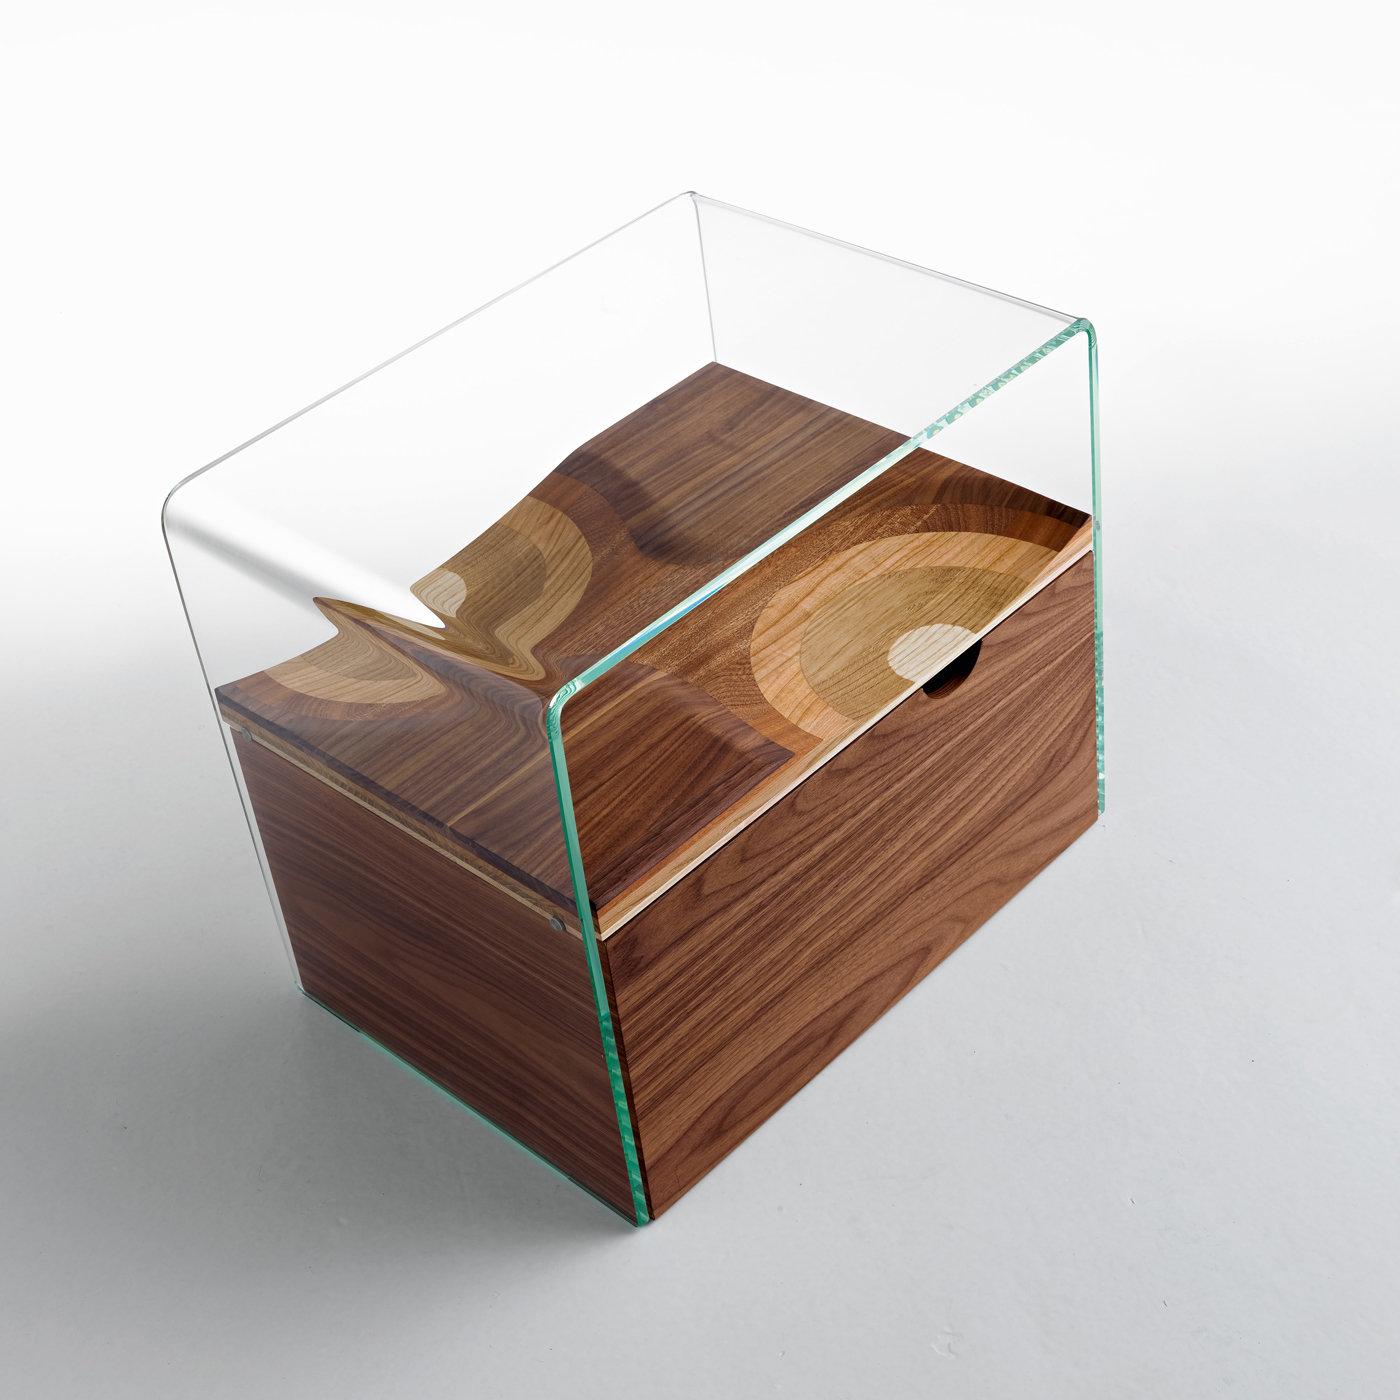 Conçue de manière exquise par Toyo Ito et faisant partie de la collection Ripples, cette table de nuit comporte une étagère composée de cinq types de bois différents (noyer, cerisier, acajou, frêne et chêne), enfermée dans un cadre en verre trempé